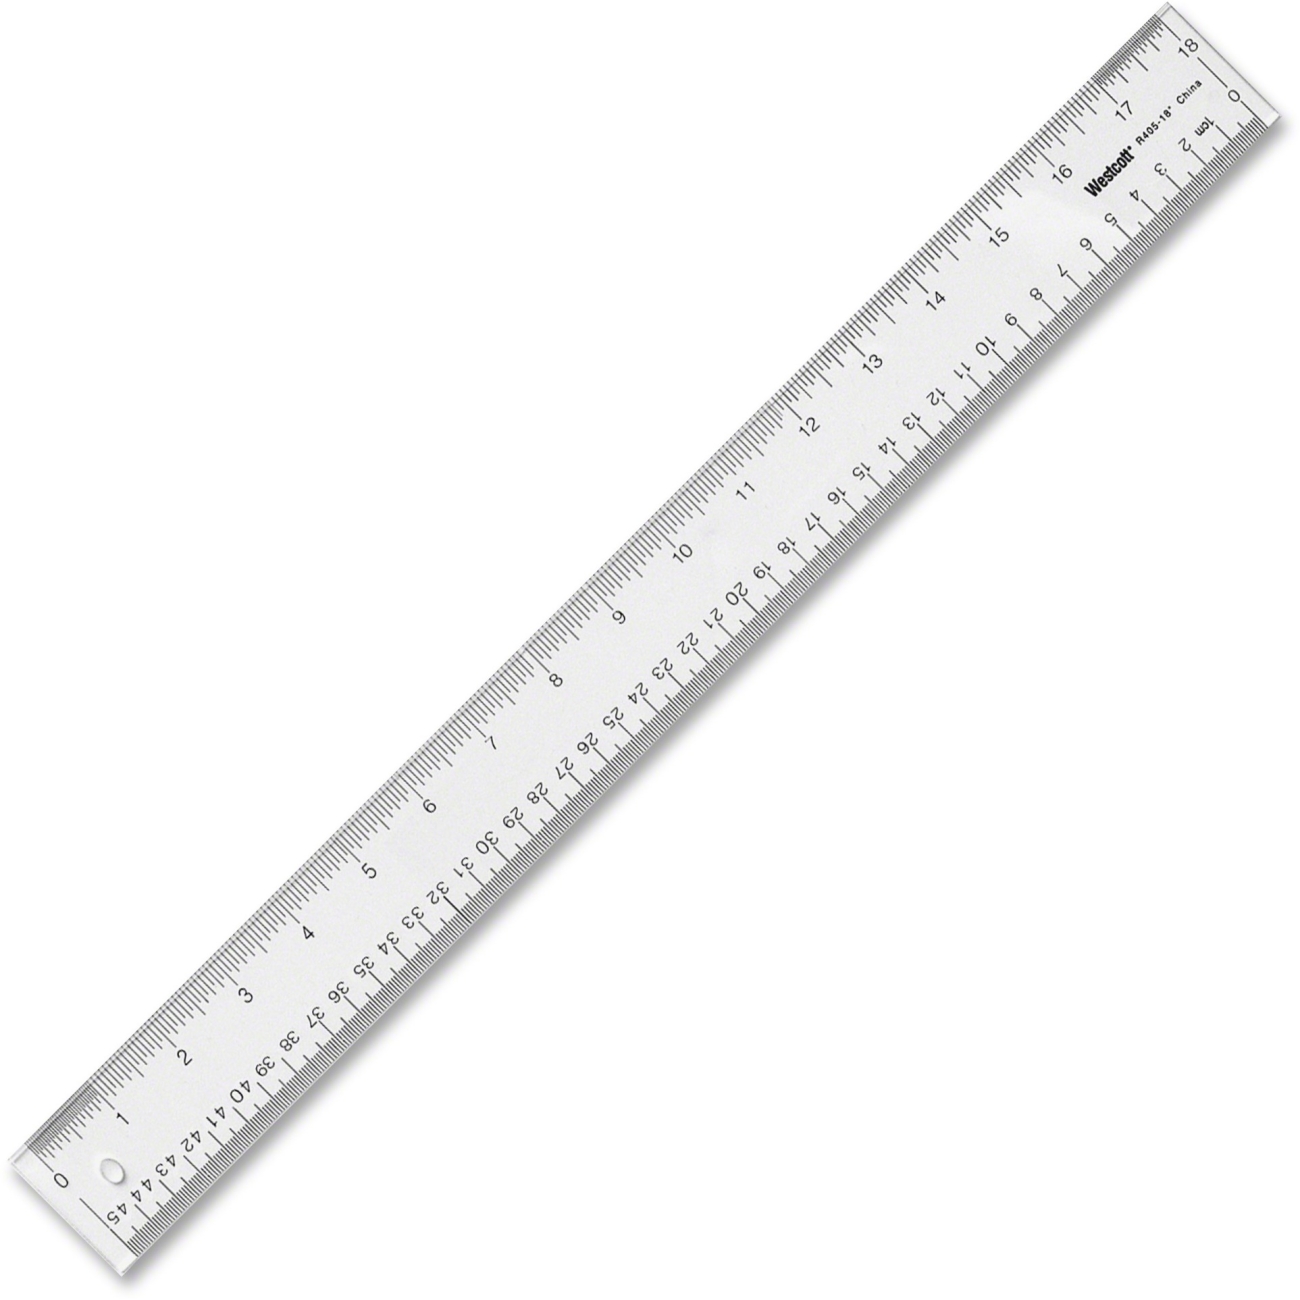 ruler millimeters printable millimeter ruler for glasses